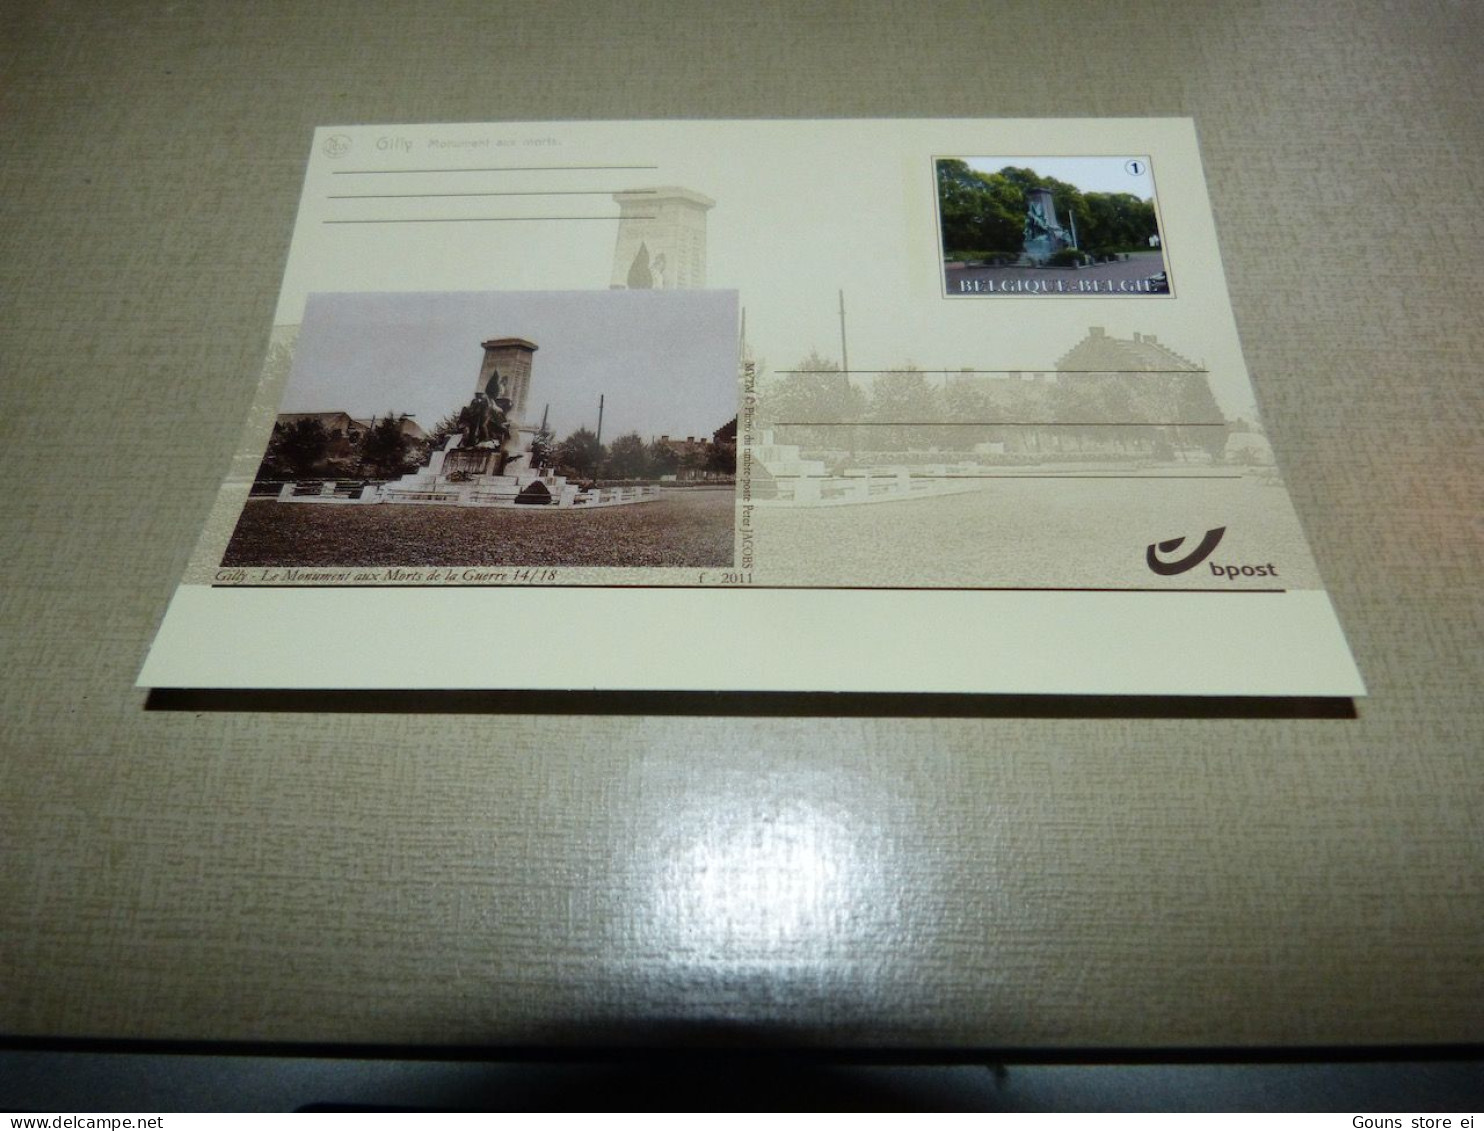 Carte Collection Poste Belge Avec Repro D'une Cpa Et Timbre Avec Vue Actuelle De La Cpa Gilly Le Monument Aux Morts - Chassepierre